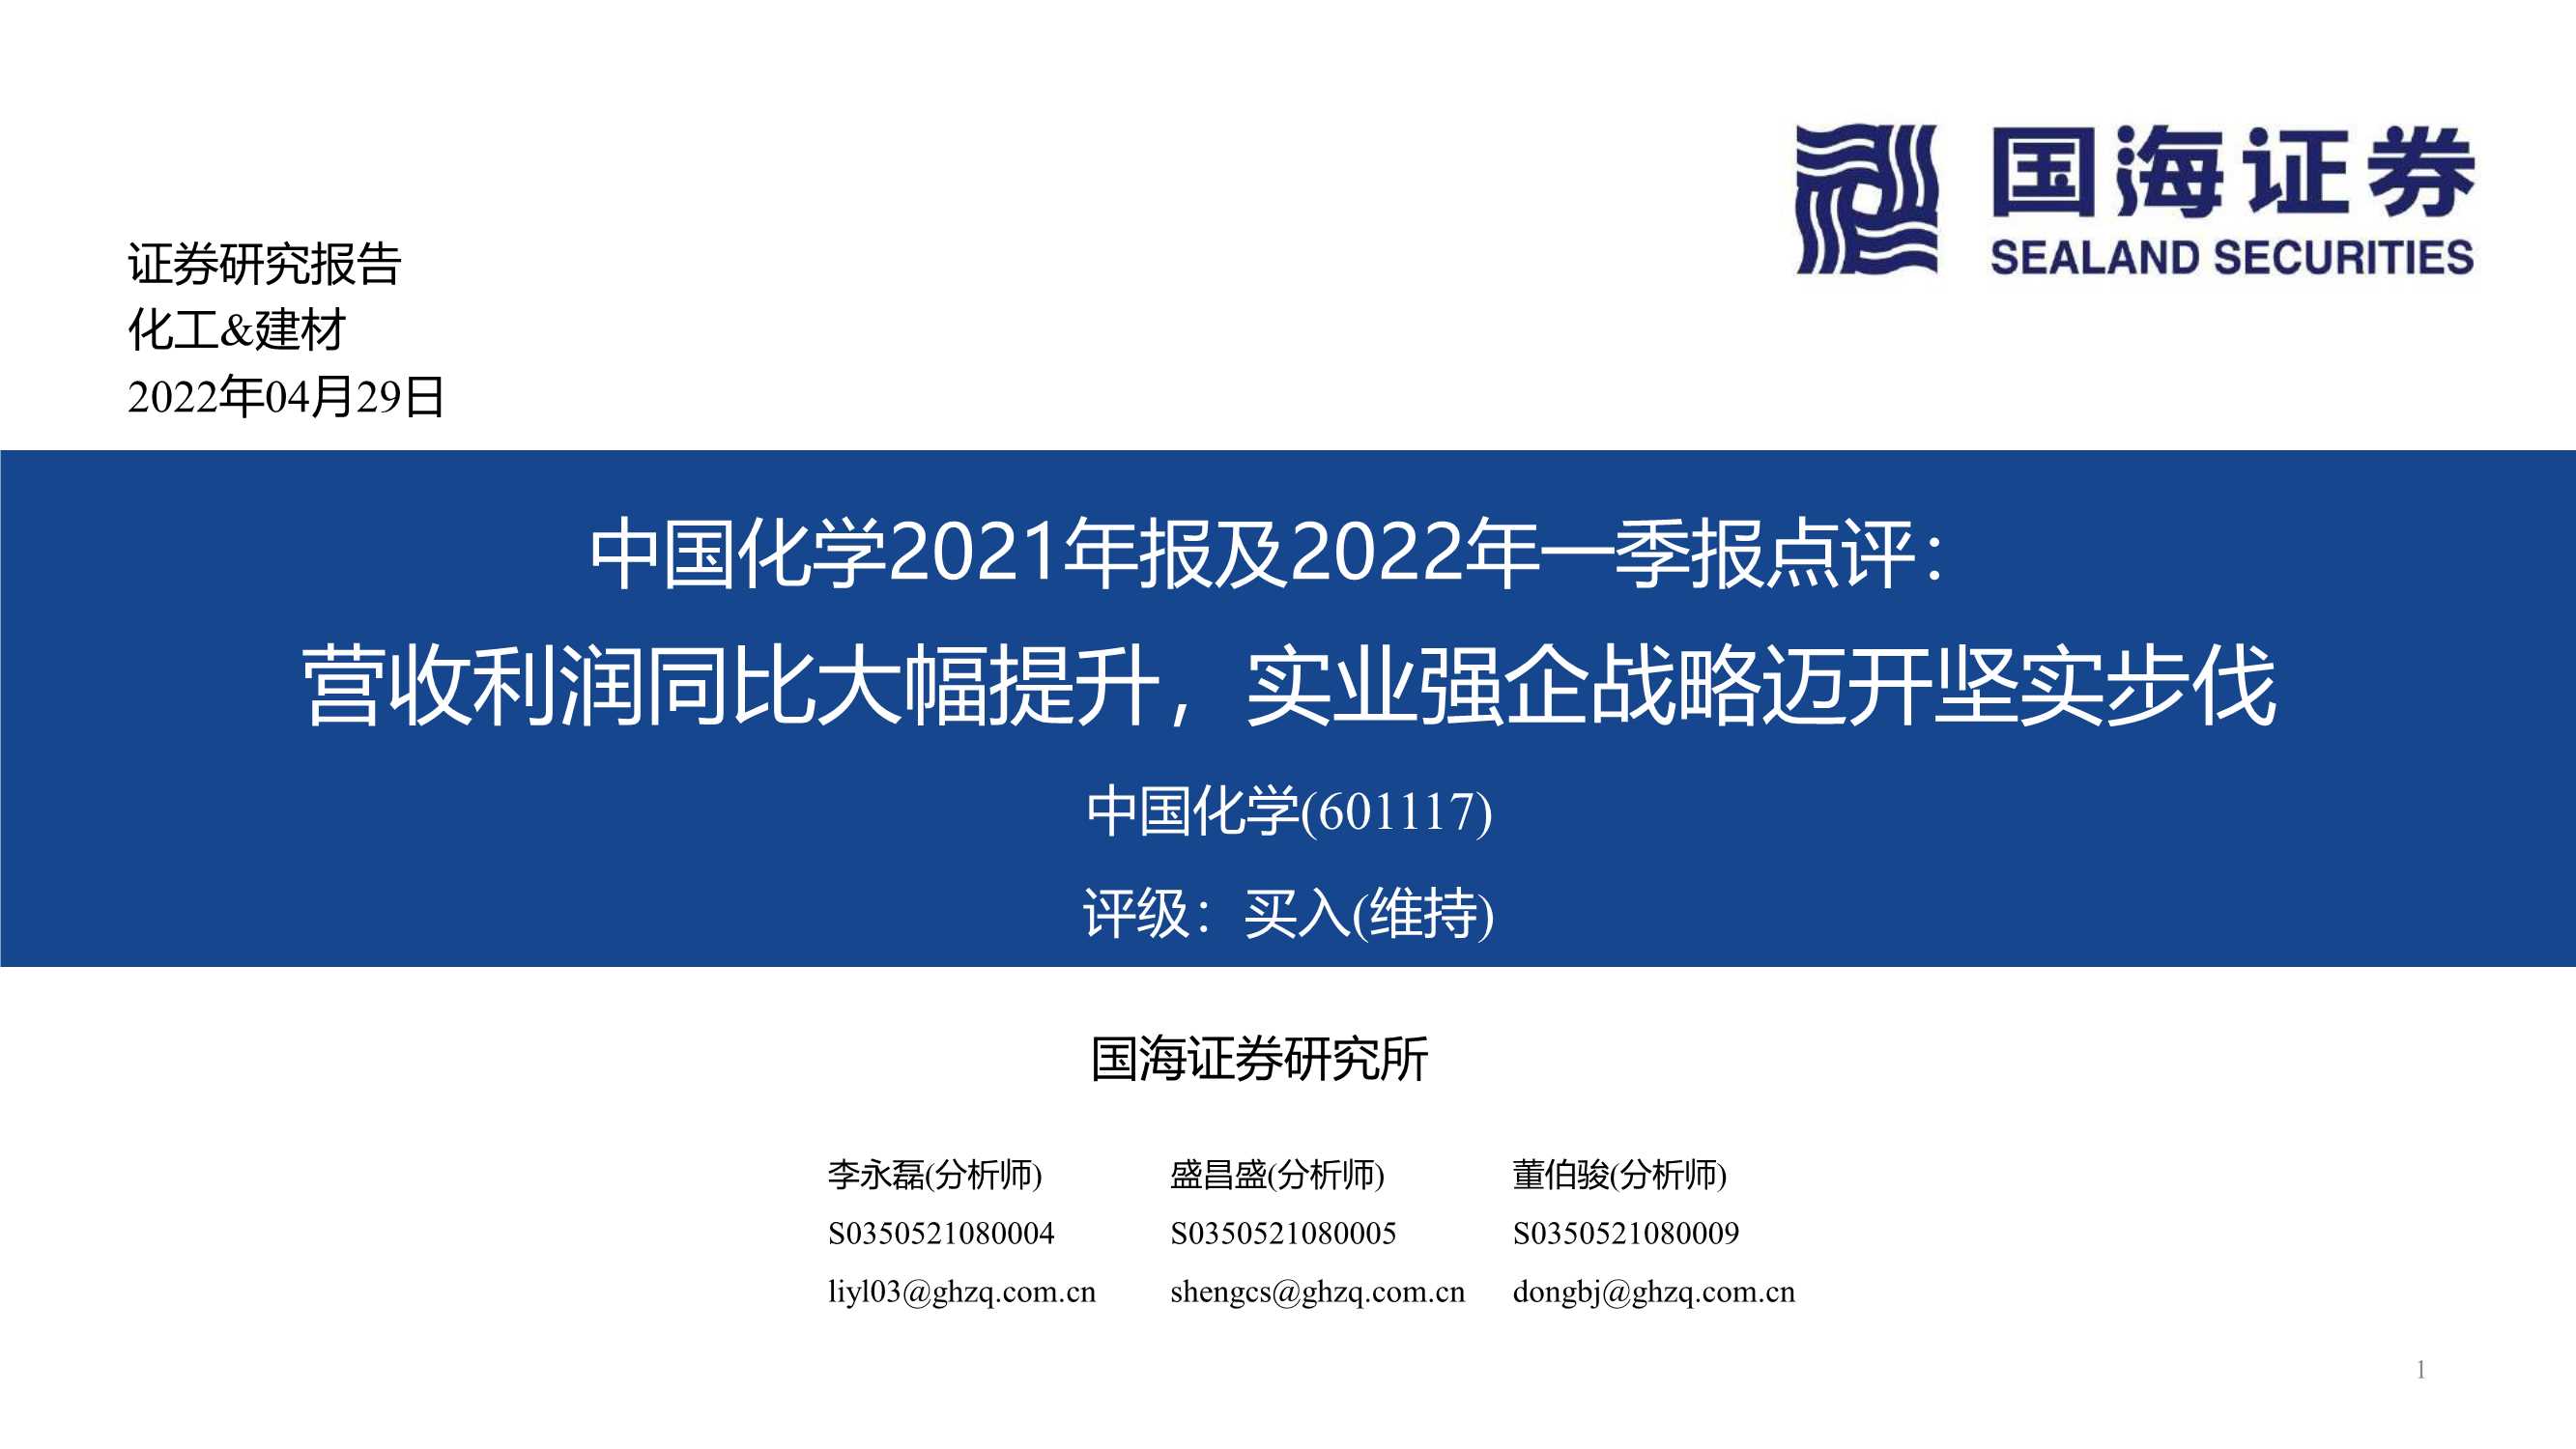 20220429-国海证券-中国化学-601117-2021年报及2022年一季报点评：营收利润同比大幅提升，实业强企战略迈开坚实步伐-20页